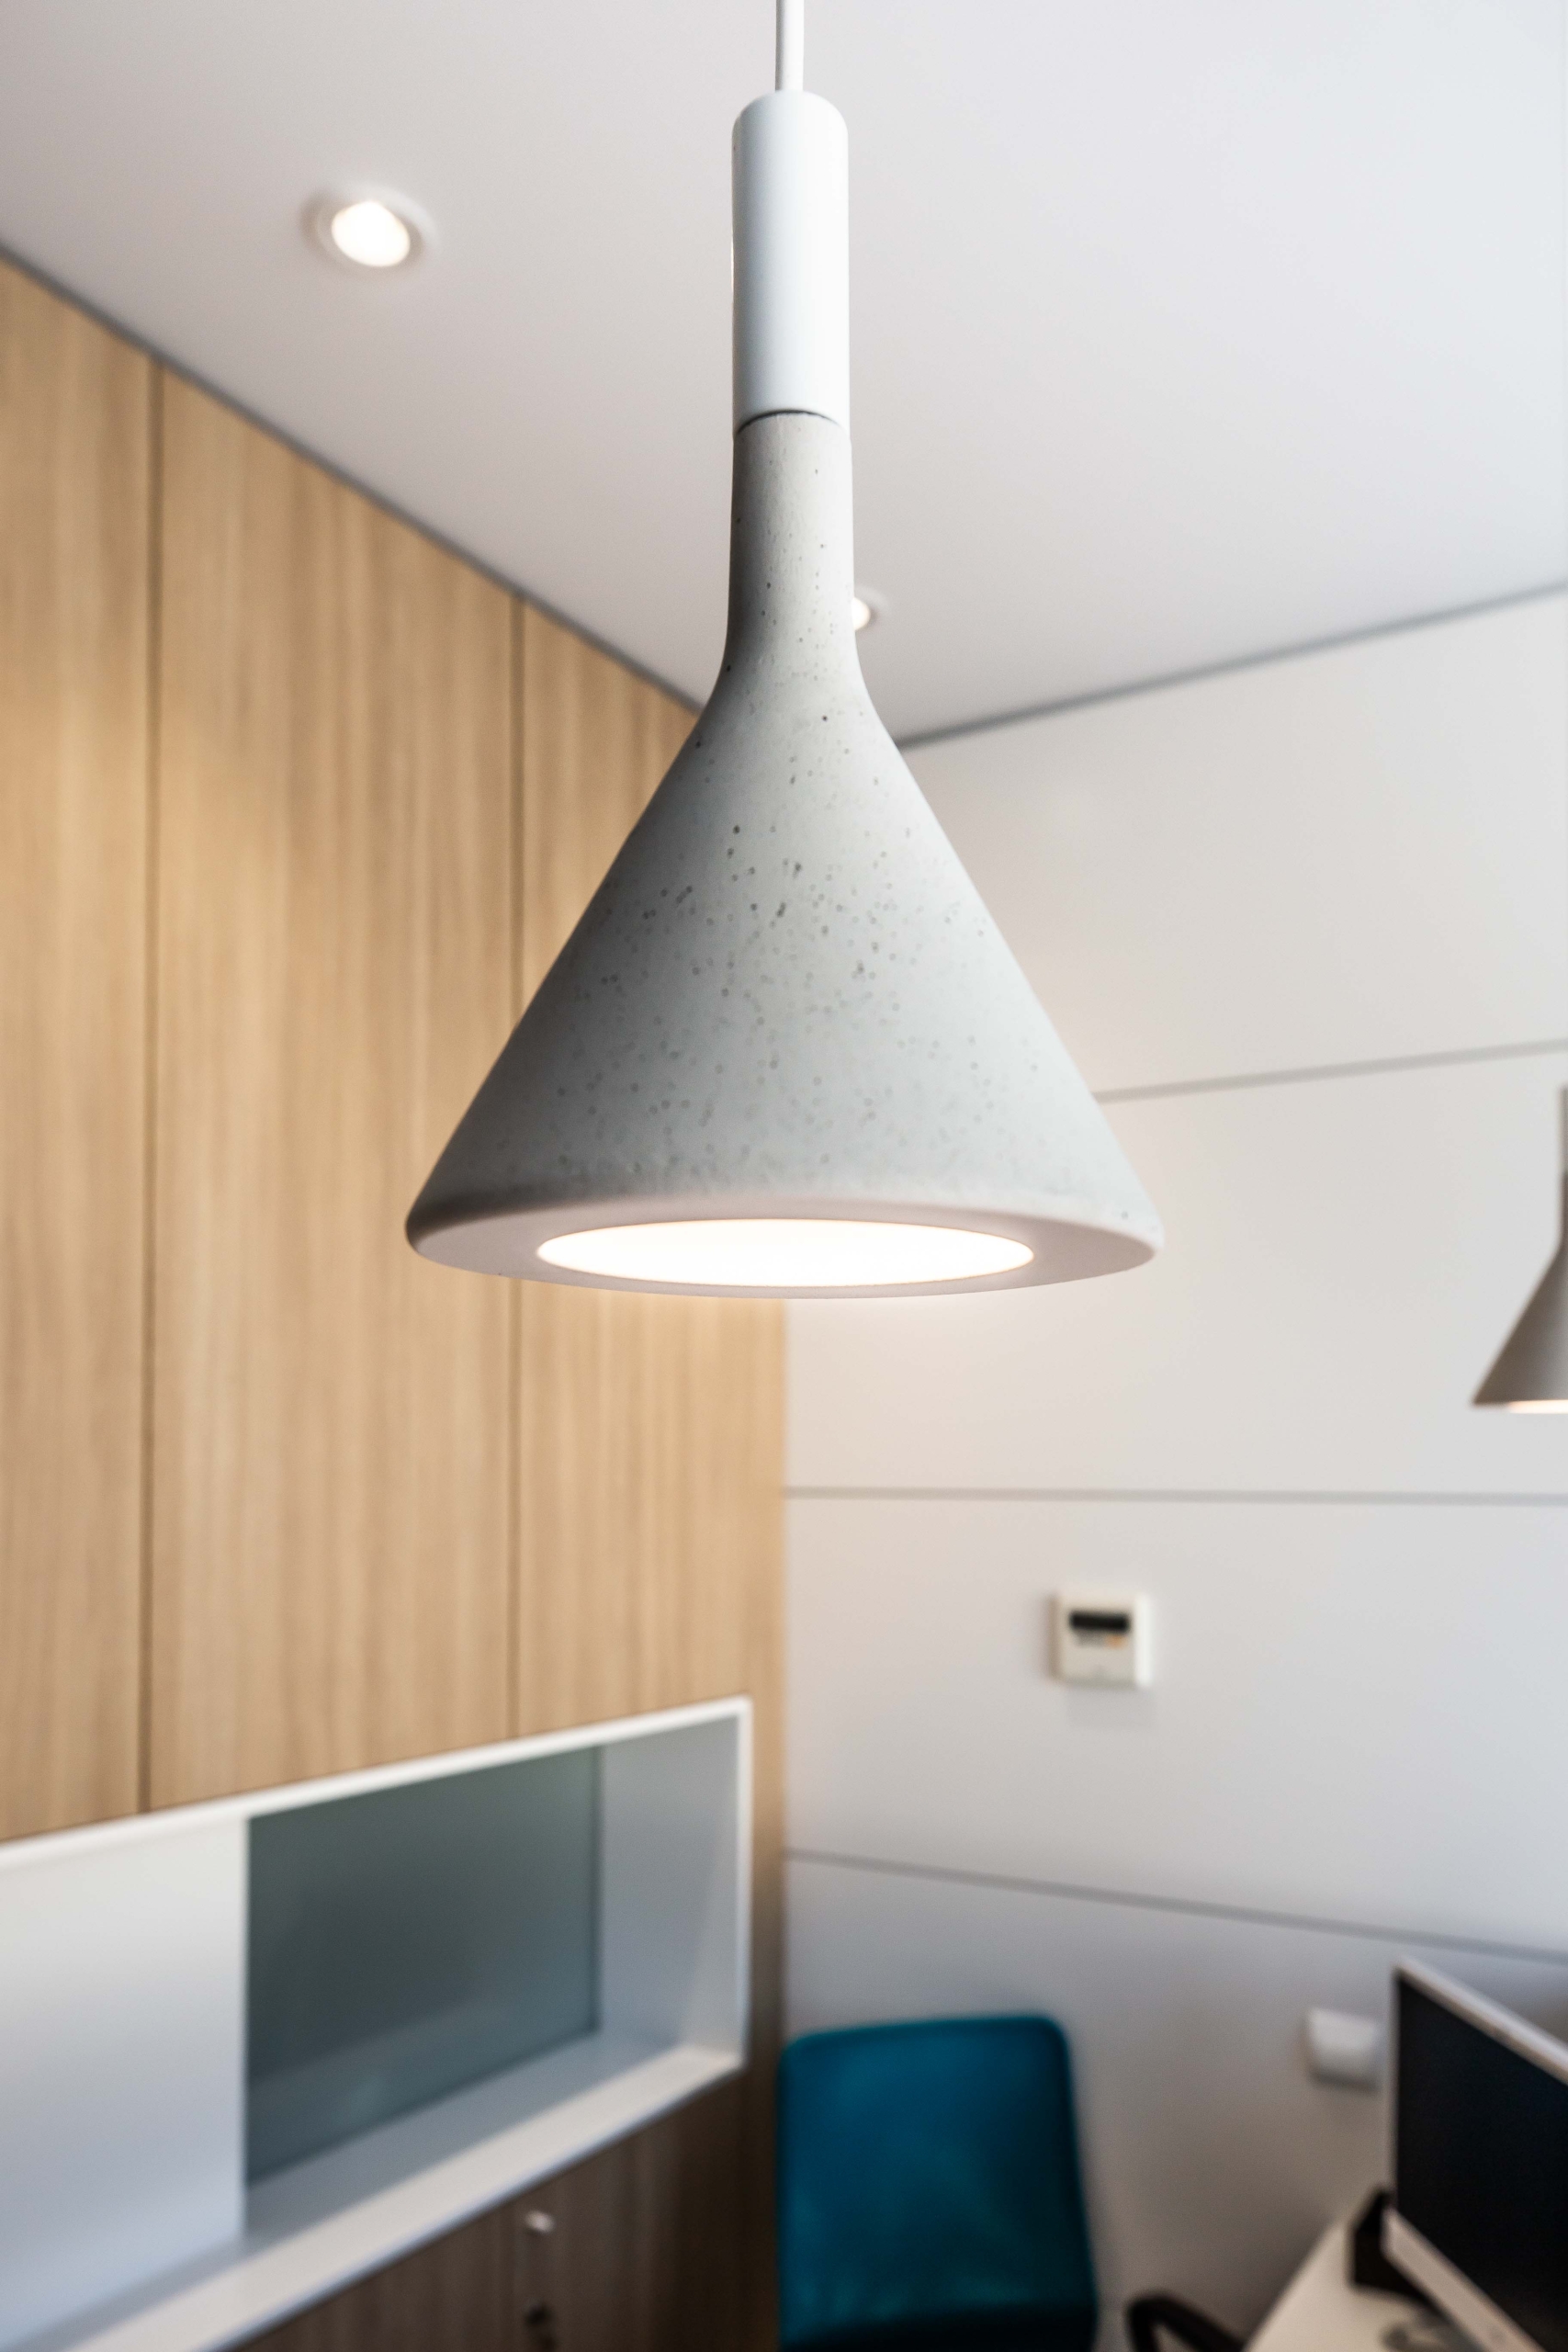 Diseño de lampara moderna con forma de copa